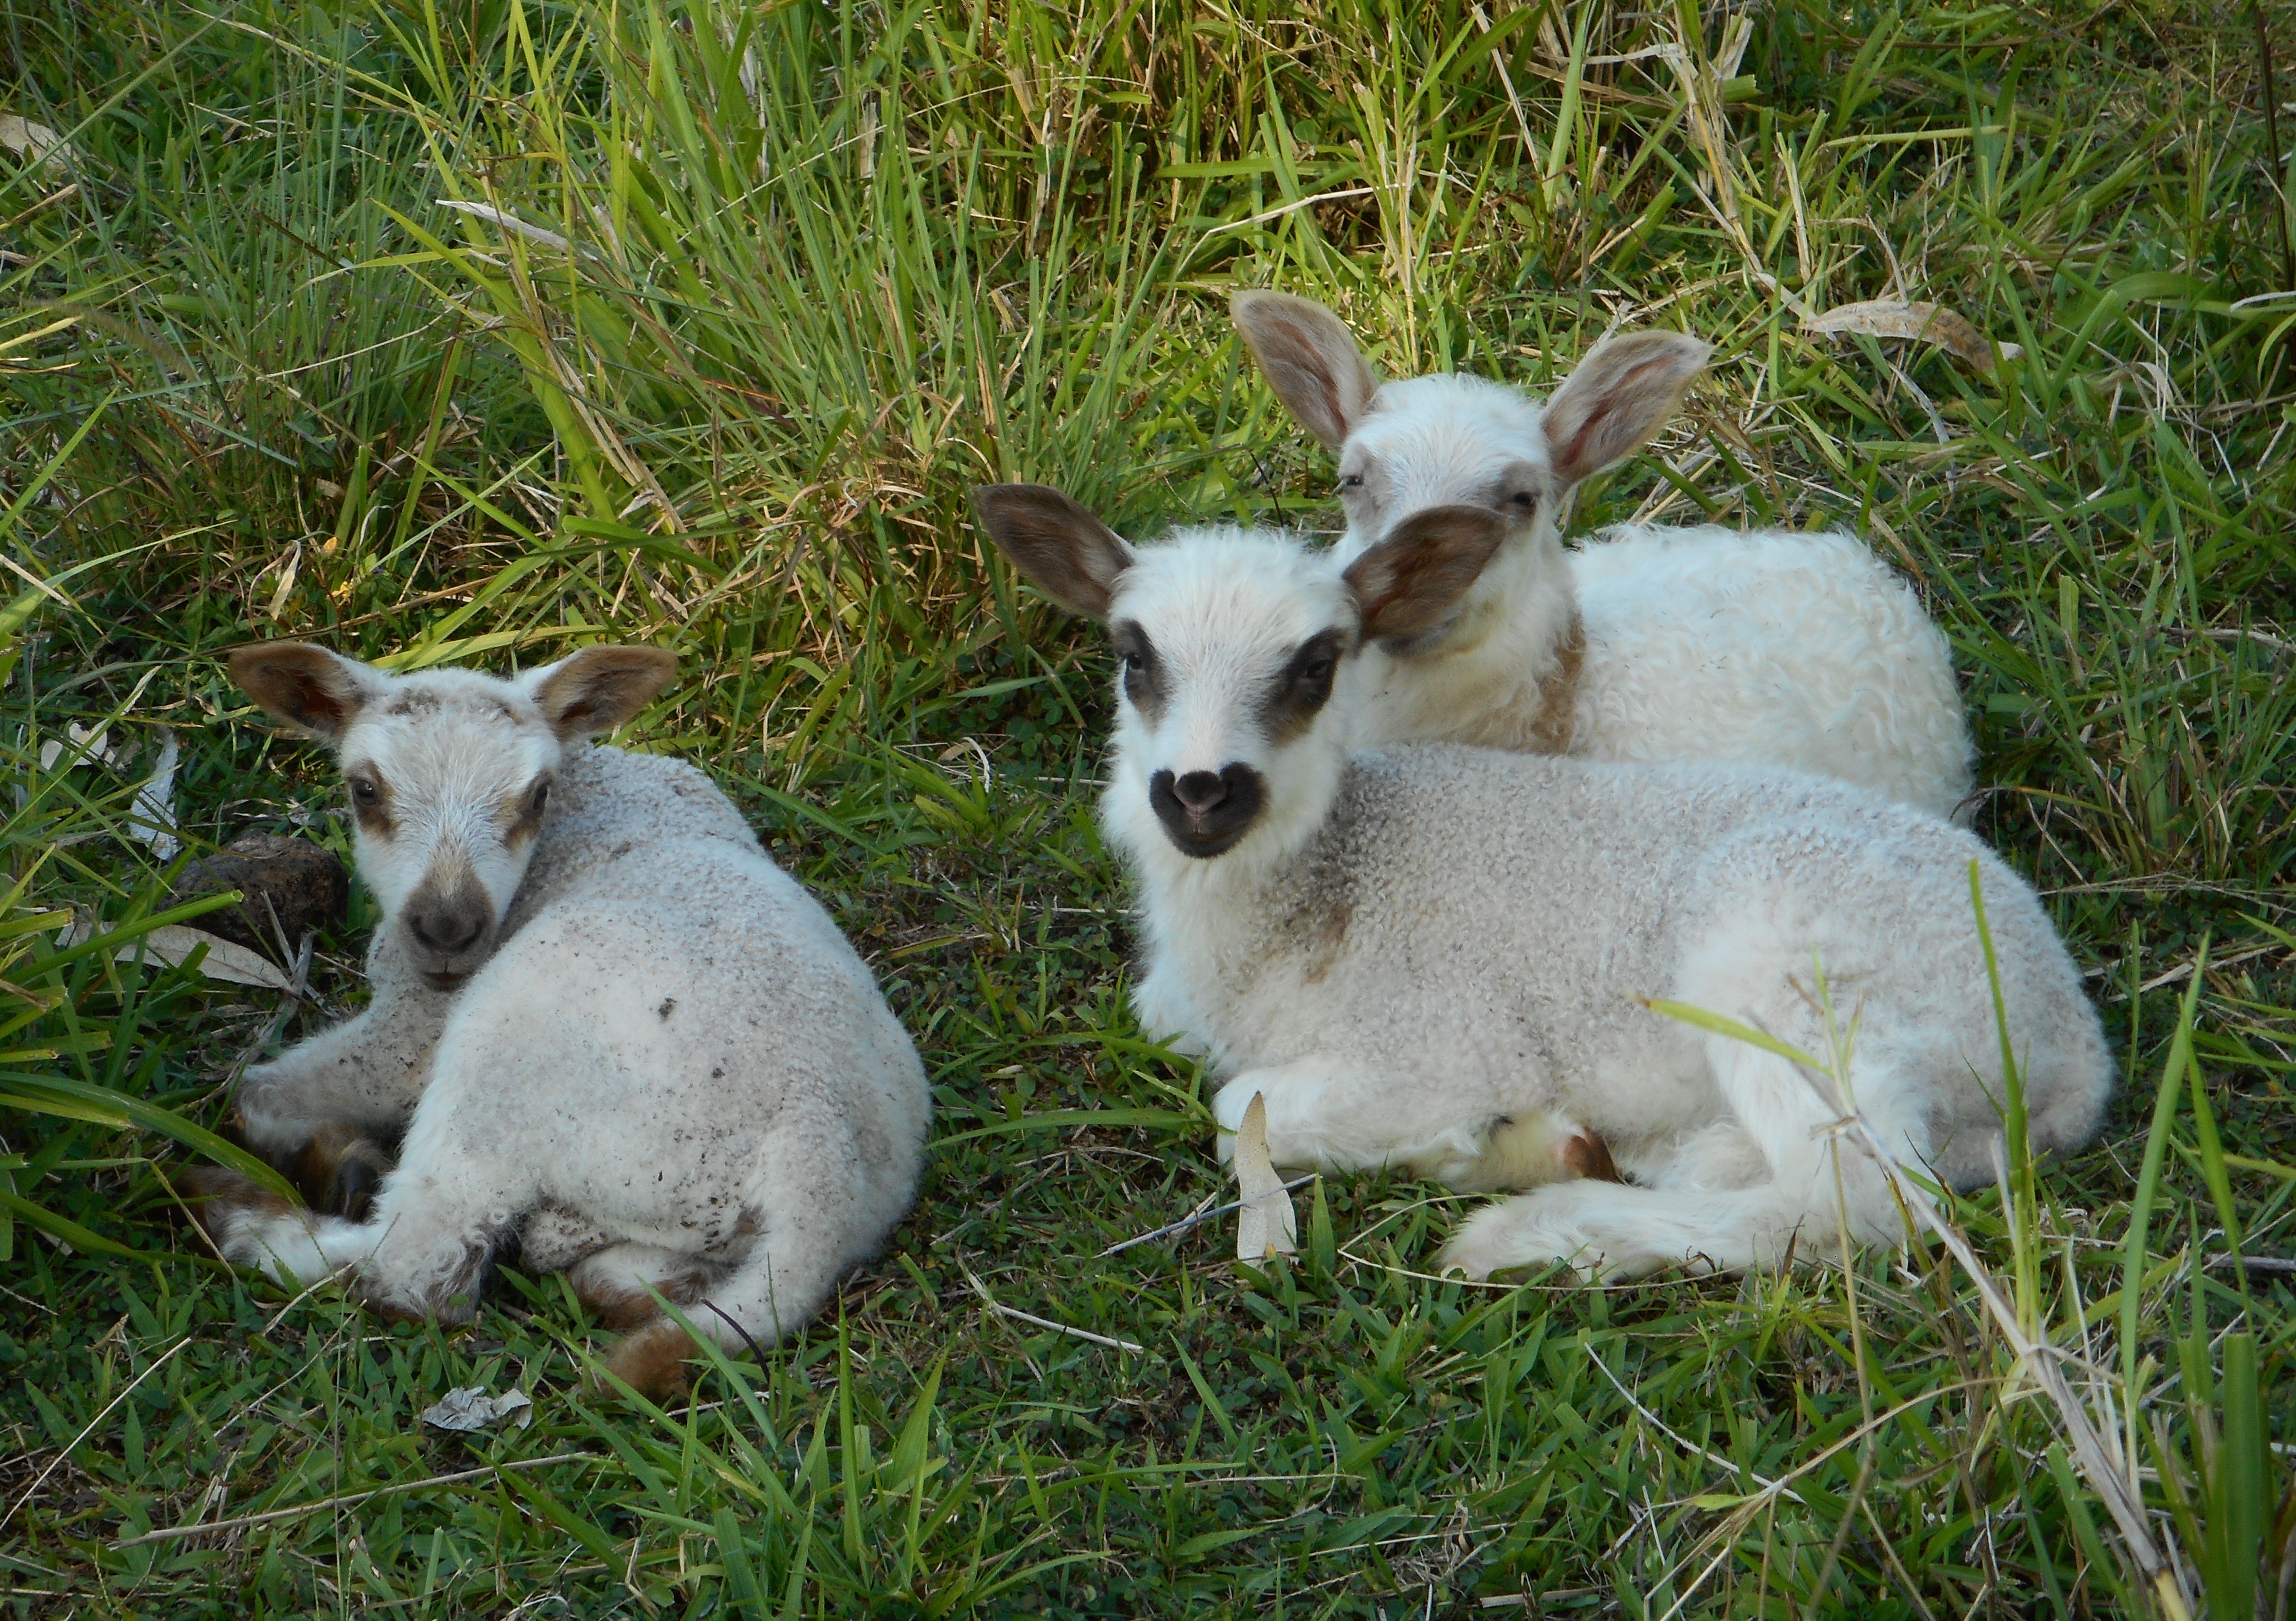 Cute little lambs